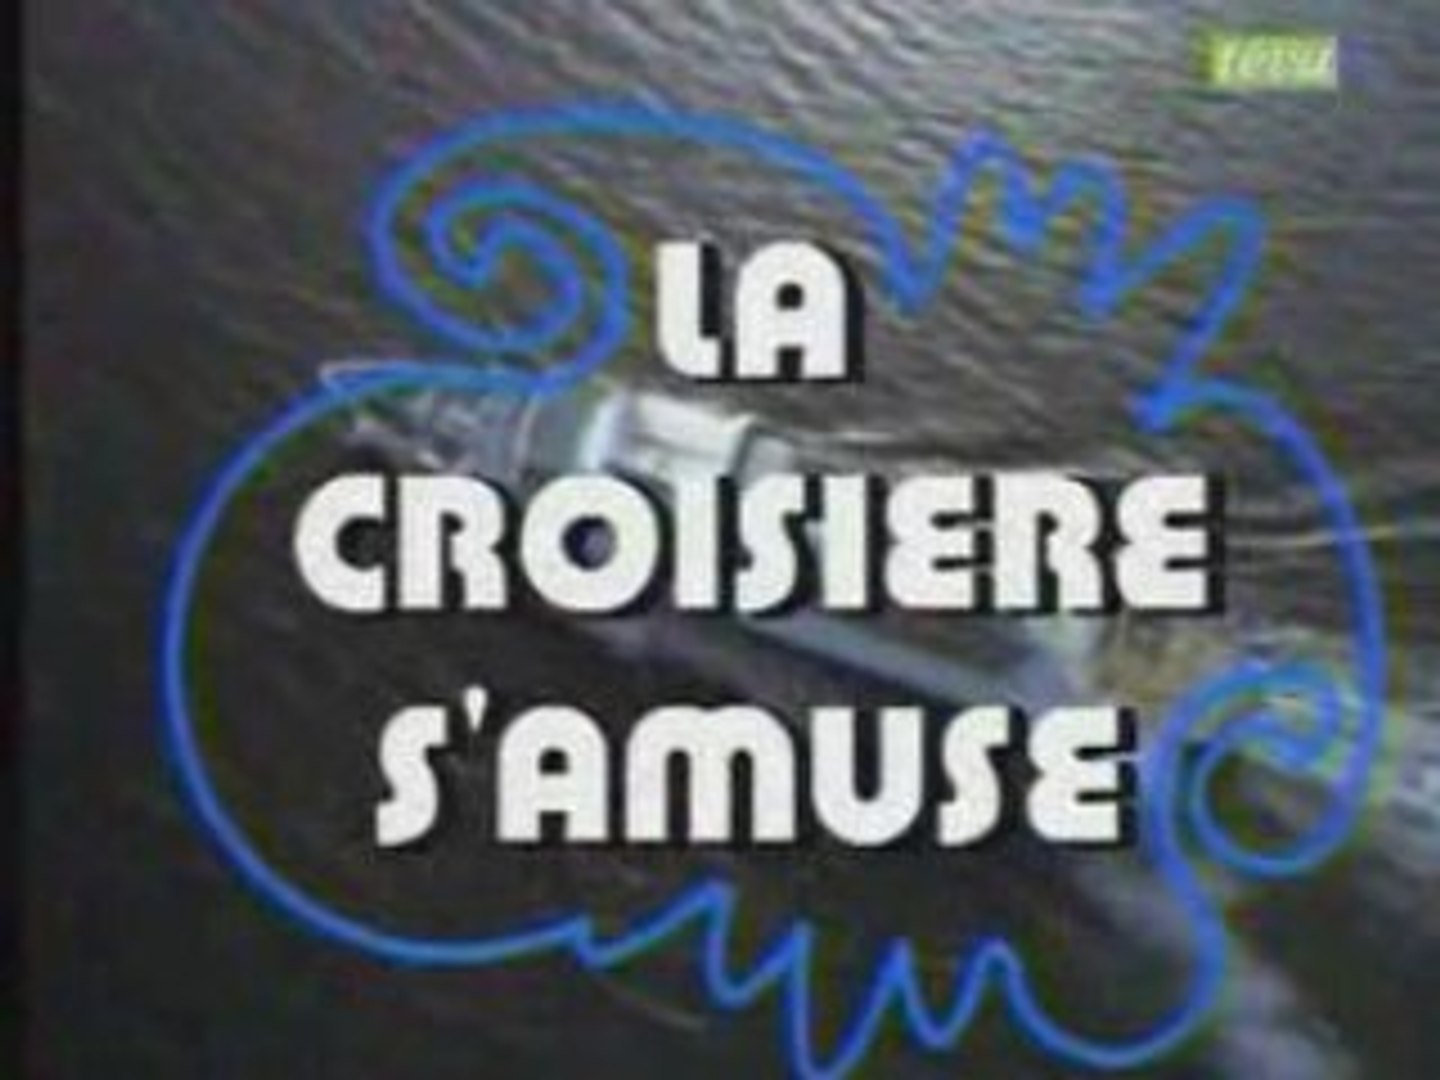 La Croisiere s'amuse générique de la série Tv - Vidéo Dailymotion